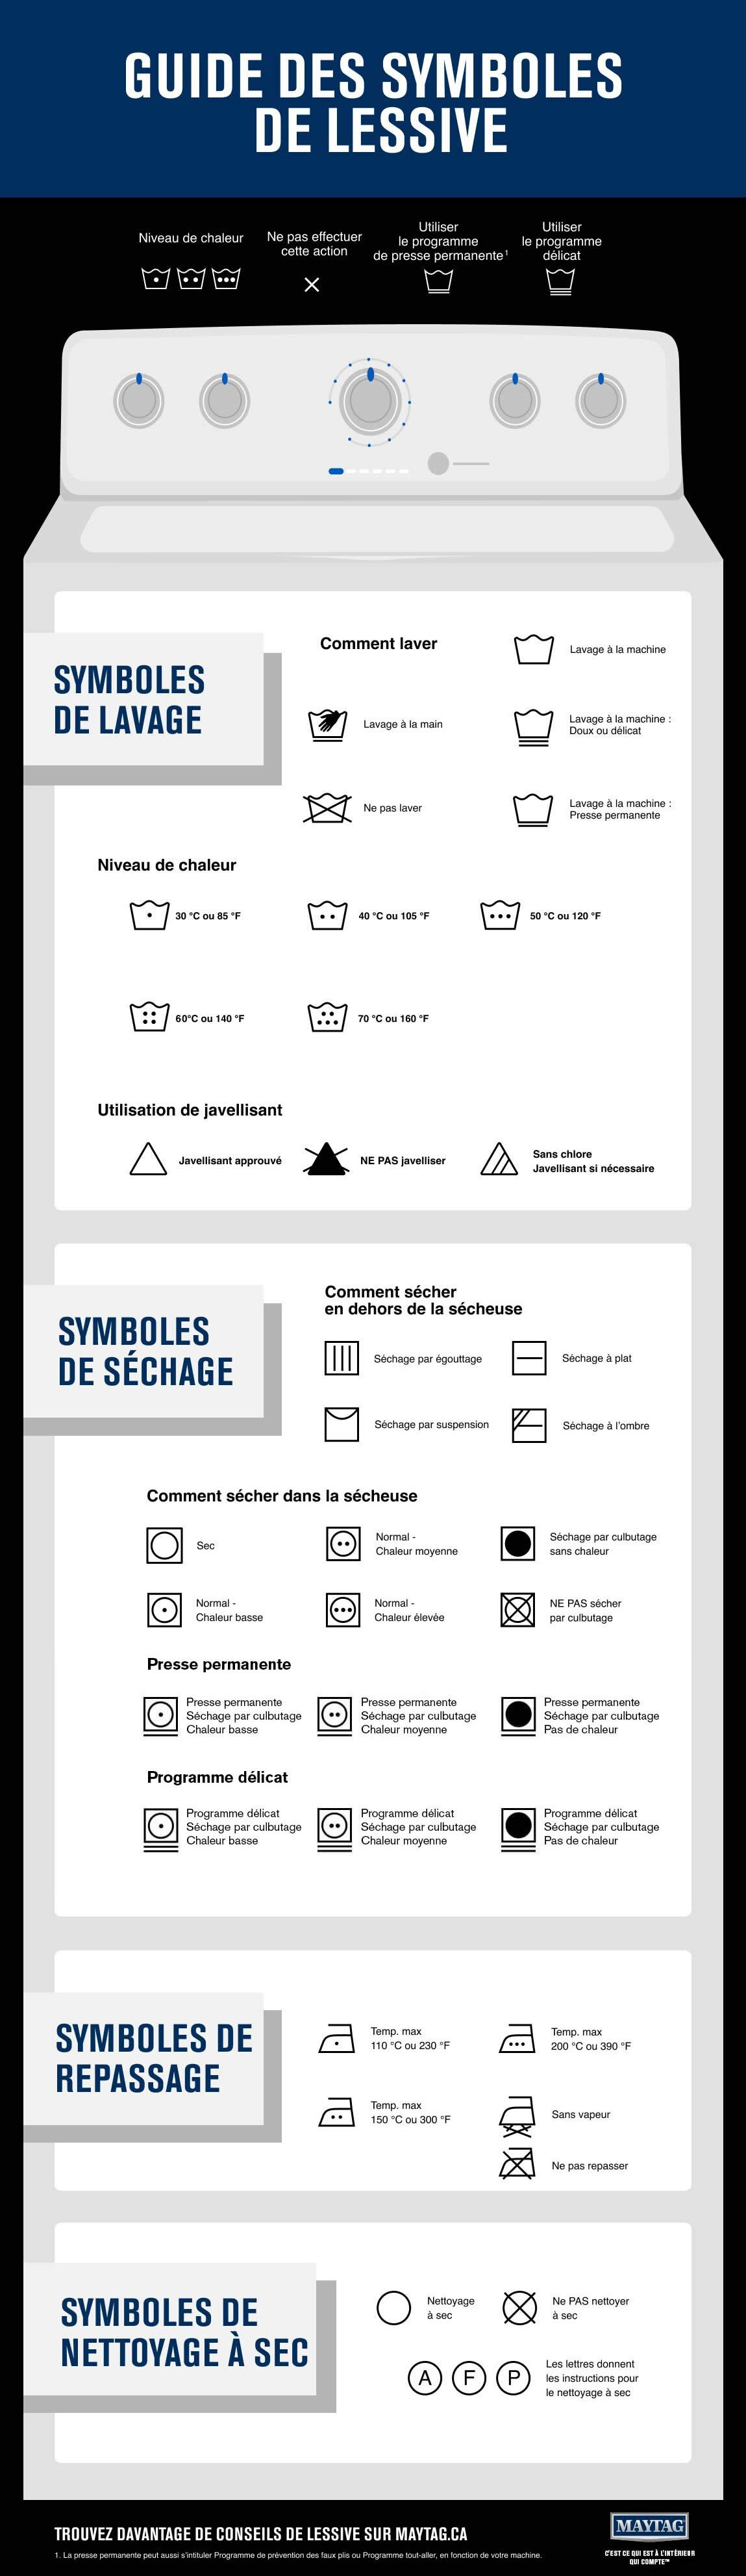 Guide des symboles de lessive - Infographique